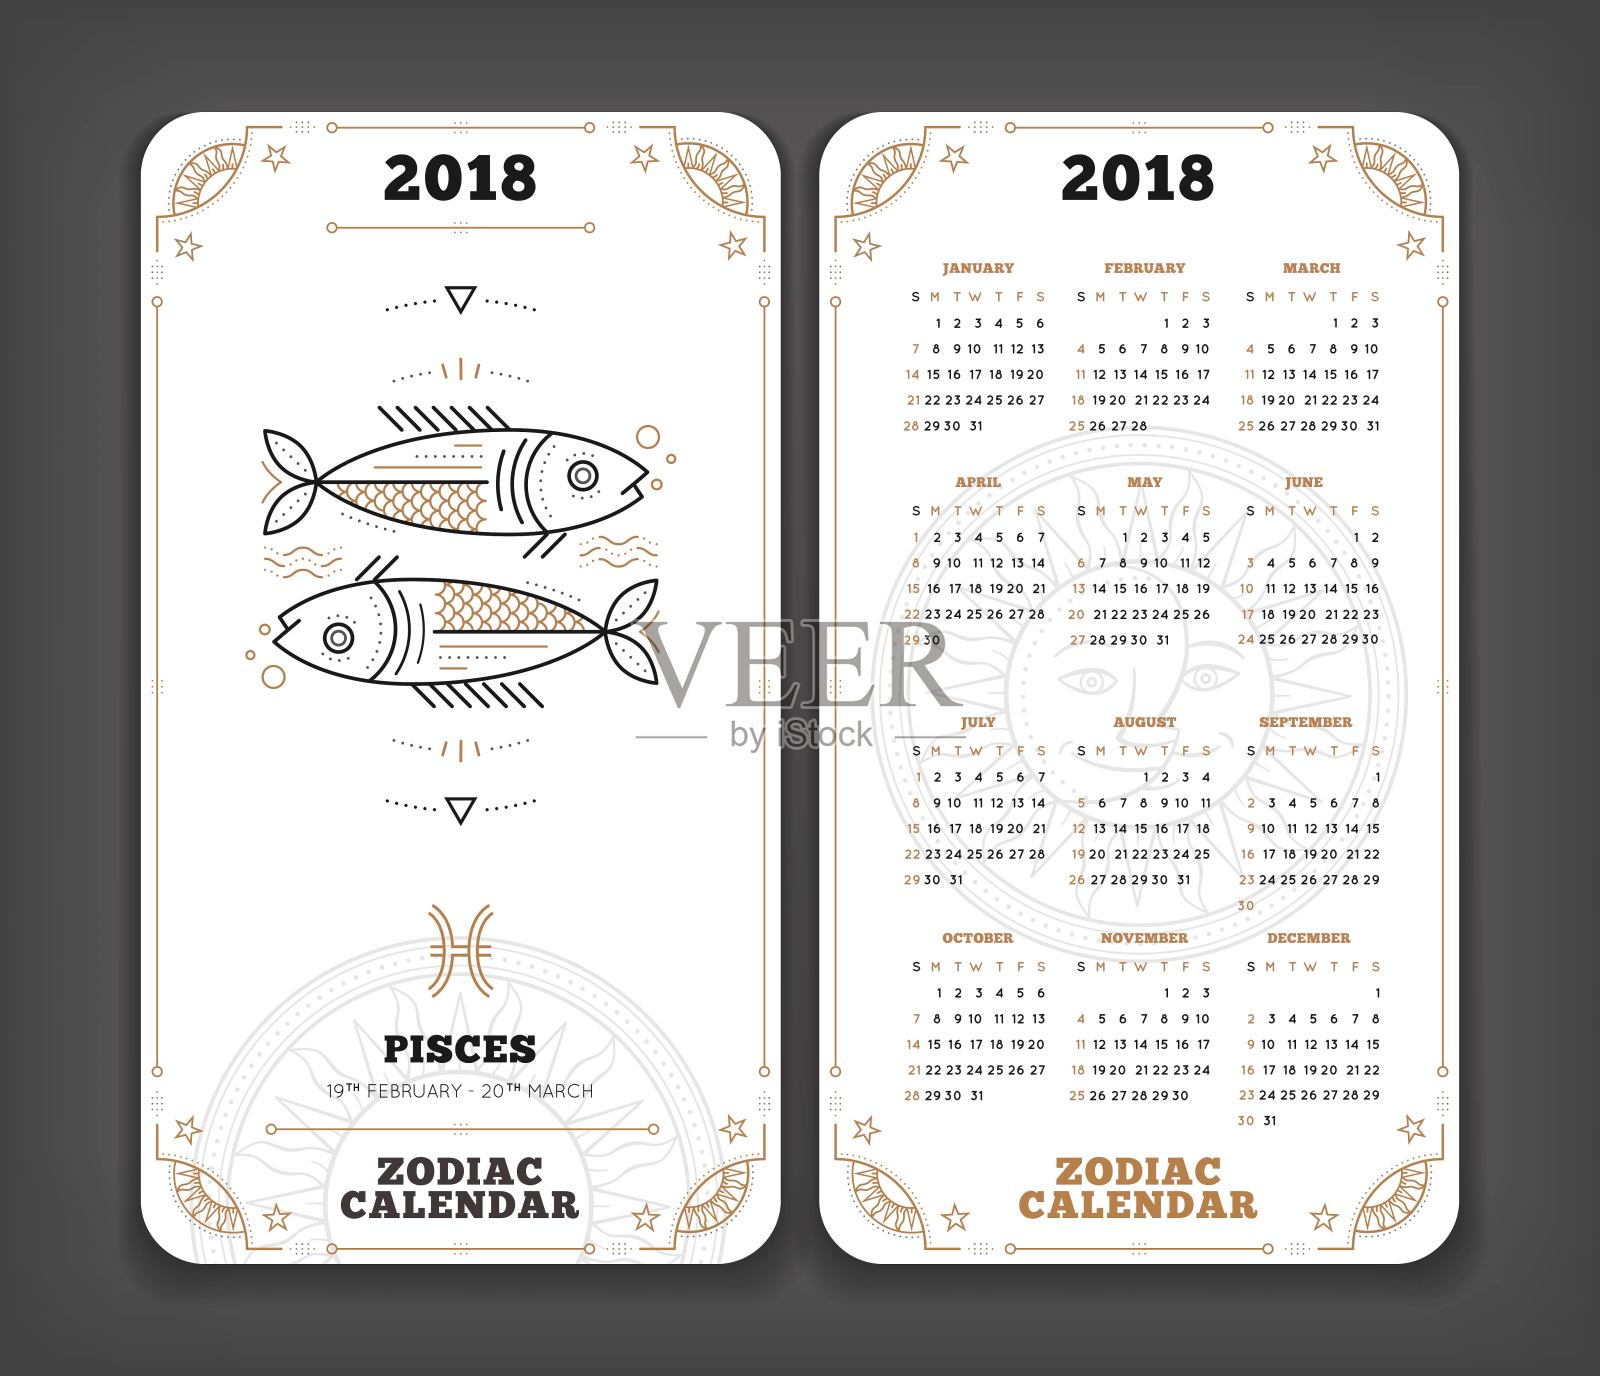 双鱼座2018年生肖日历口袋大小垂直布局双面白色设计风格矢量概念插图插画图片素材